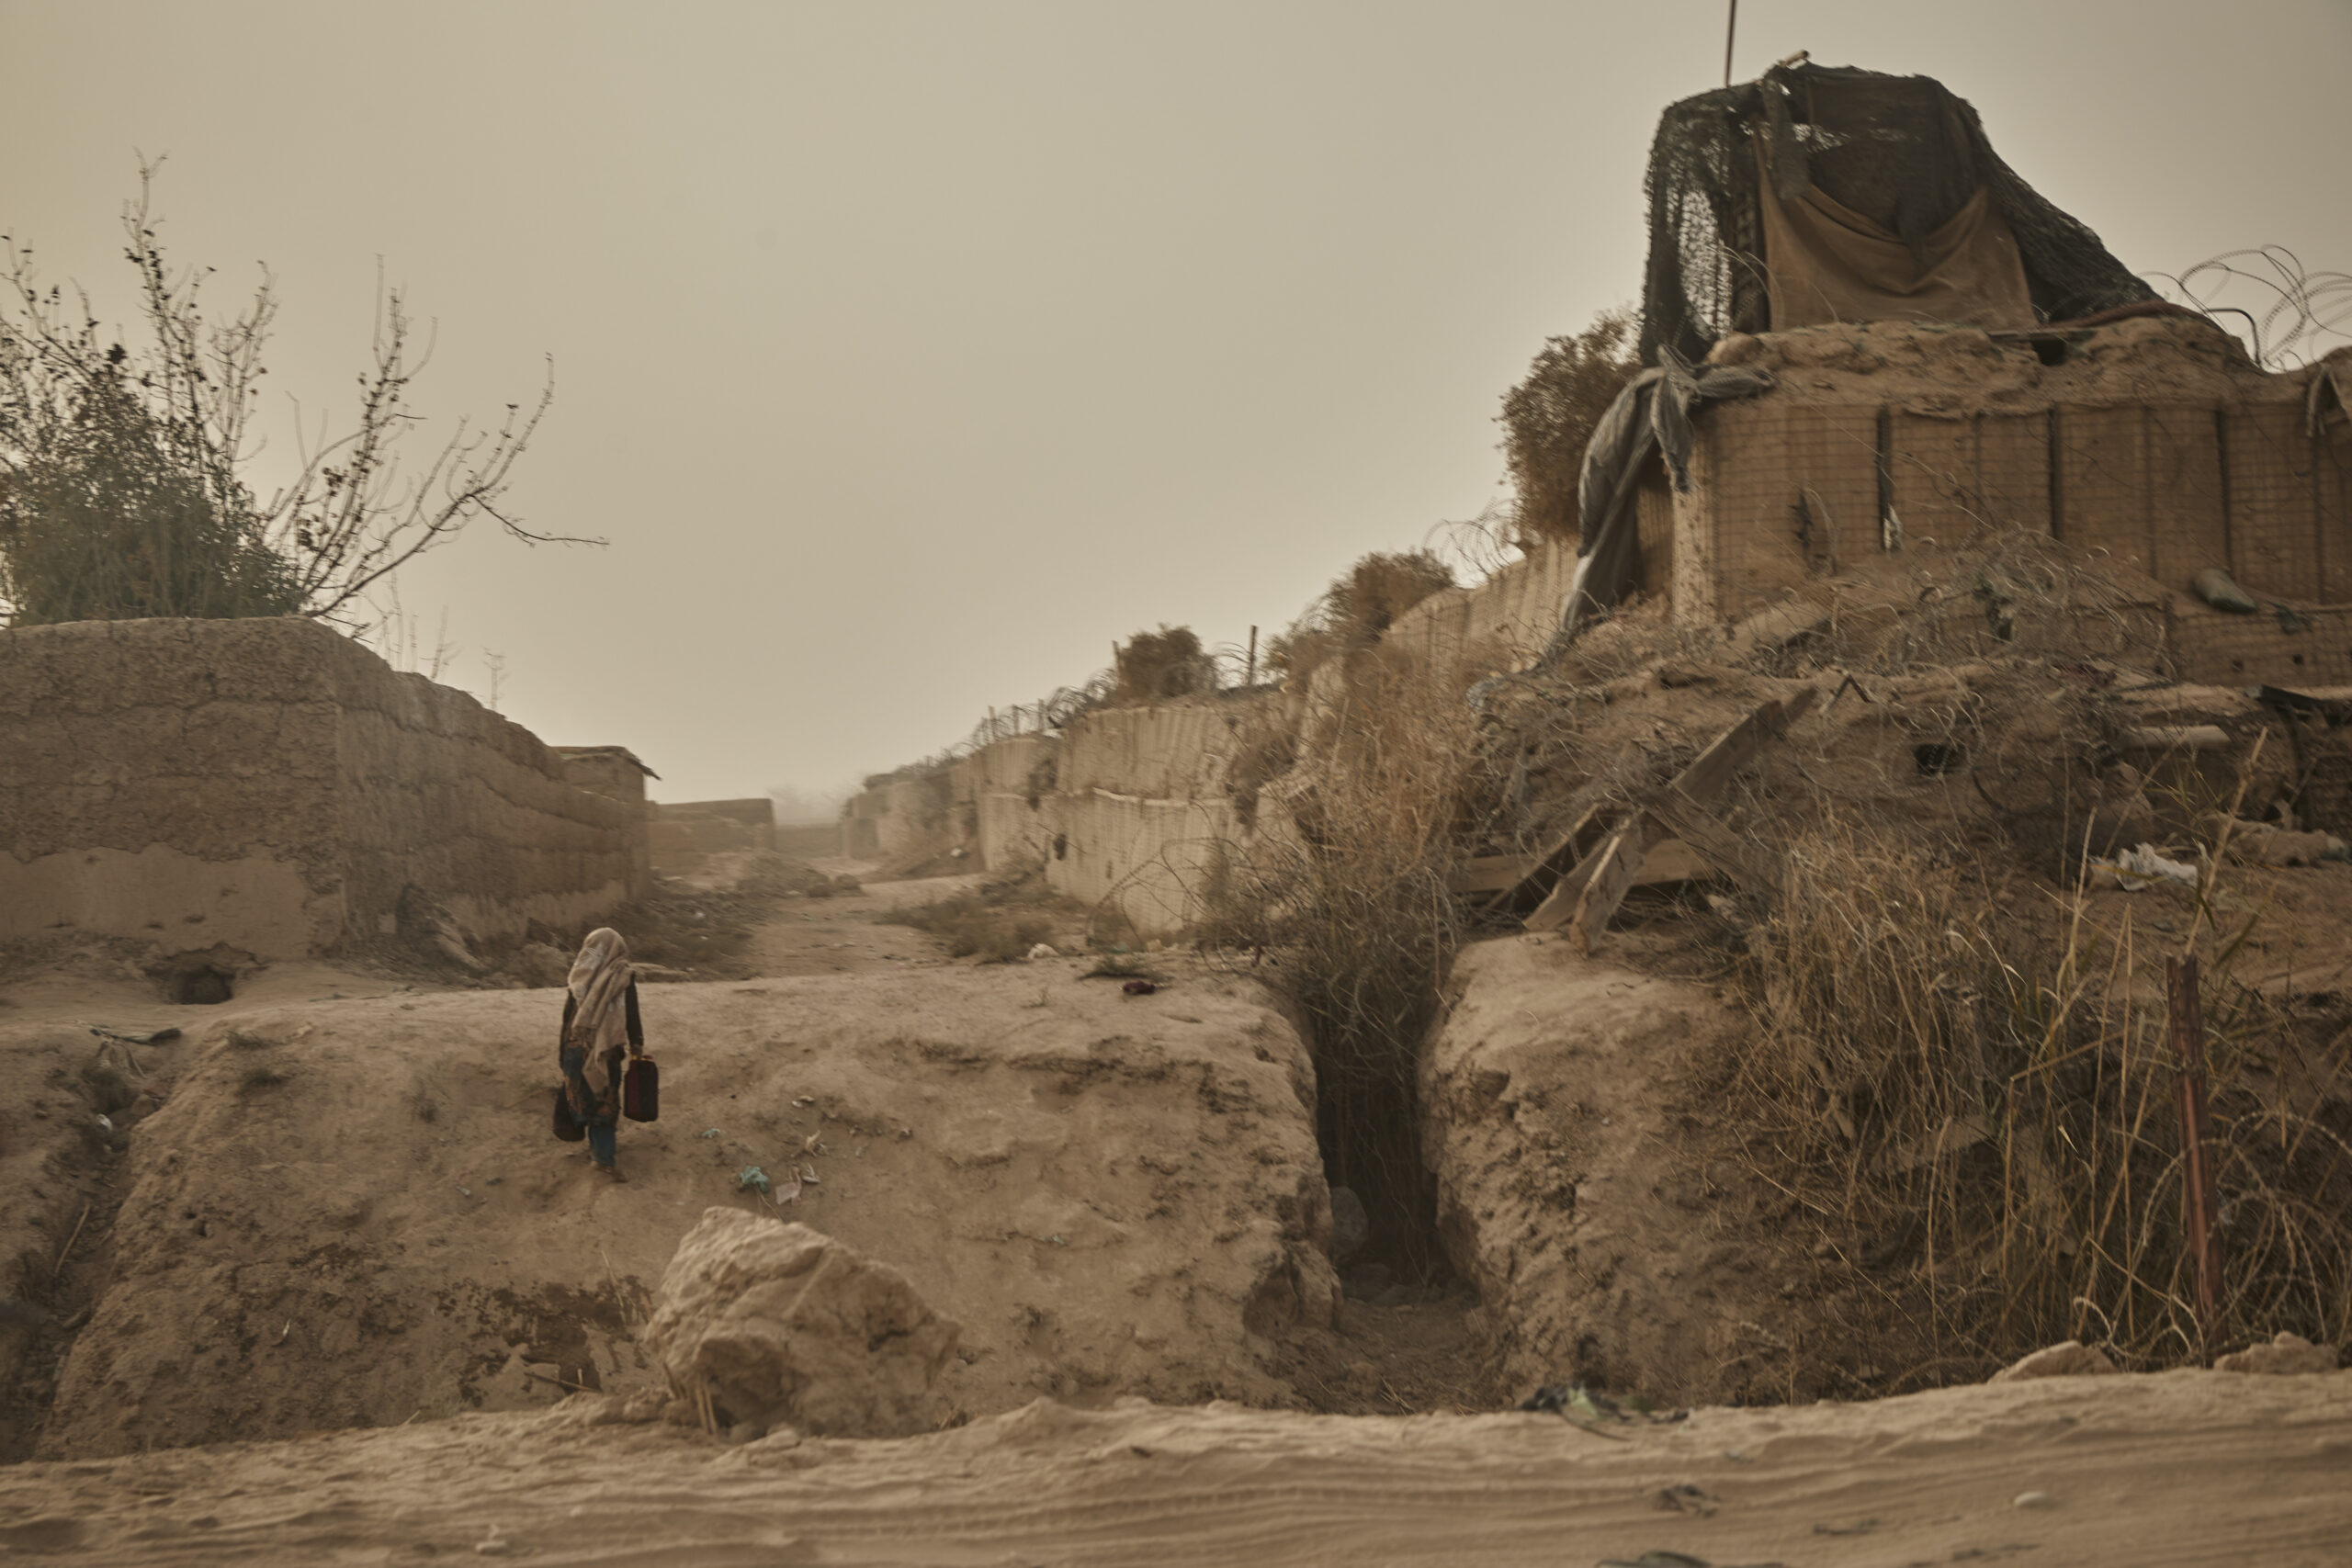 Le paysage aride du Helmand où les effets d’une grave sécheresse sont visibles partout.   © HCR/Andrew McConnell